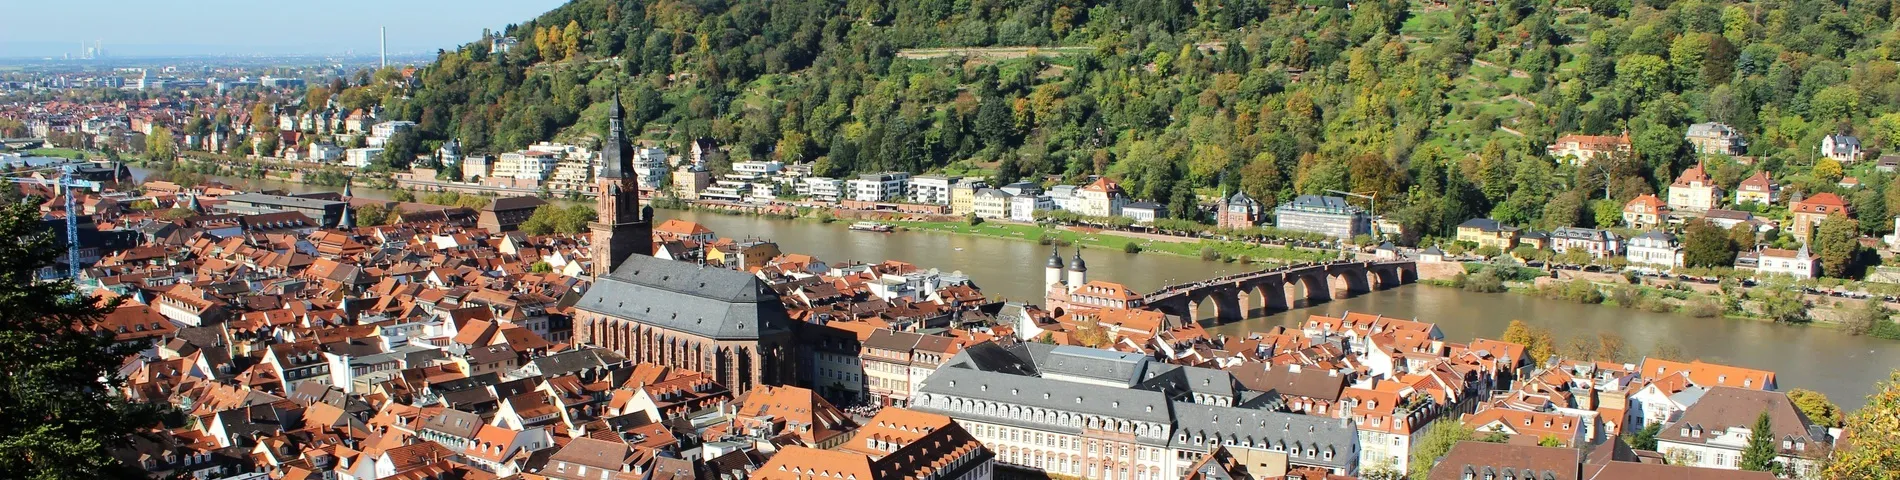 Heidelberg - General